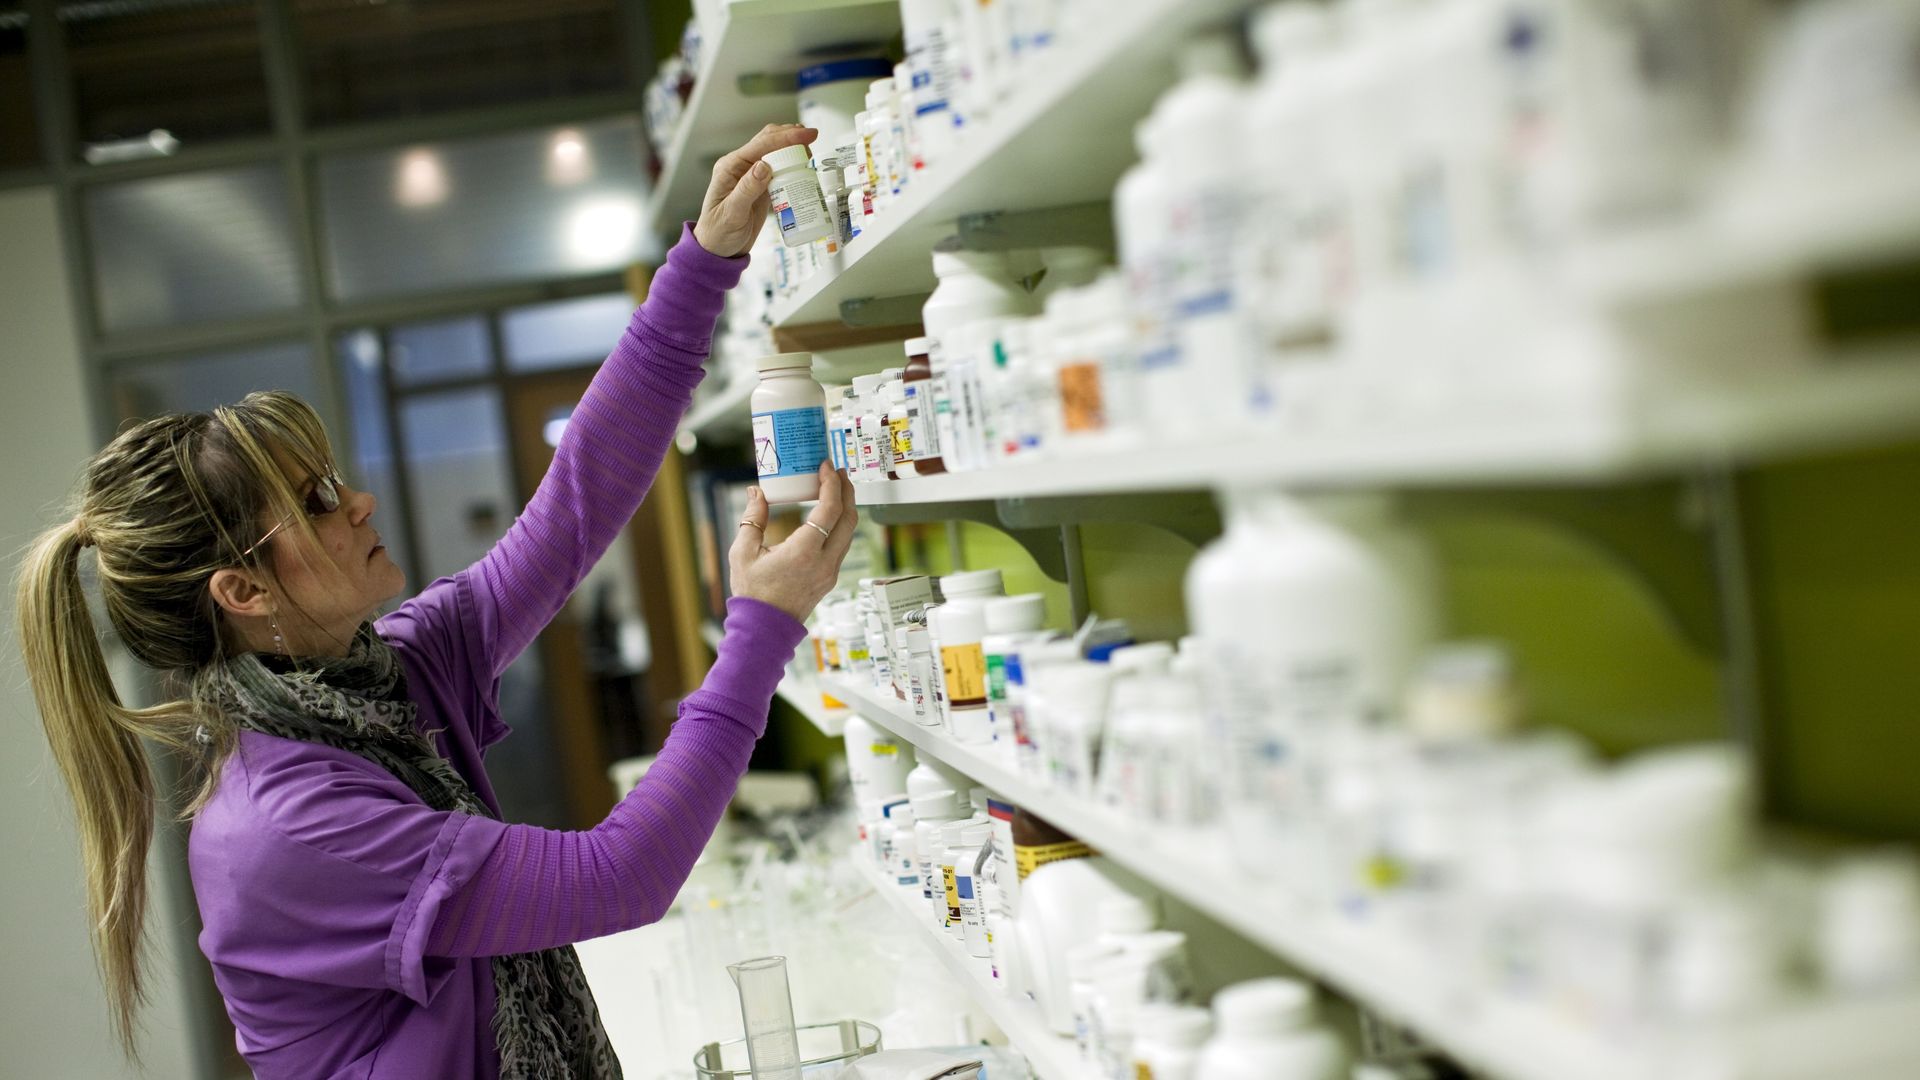 A pharmacy technician looks at prescription pill bottles on shelves.